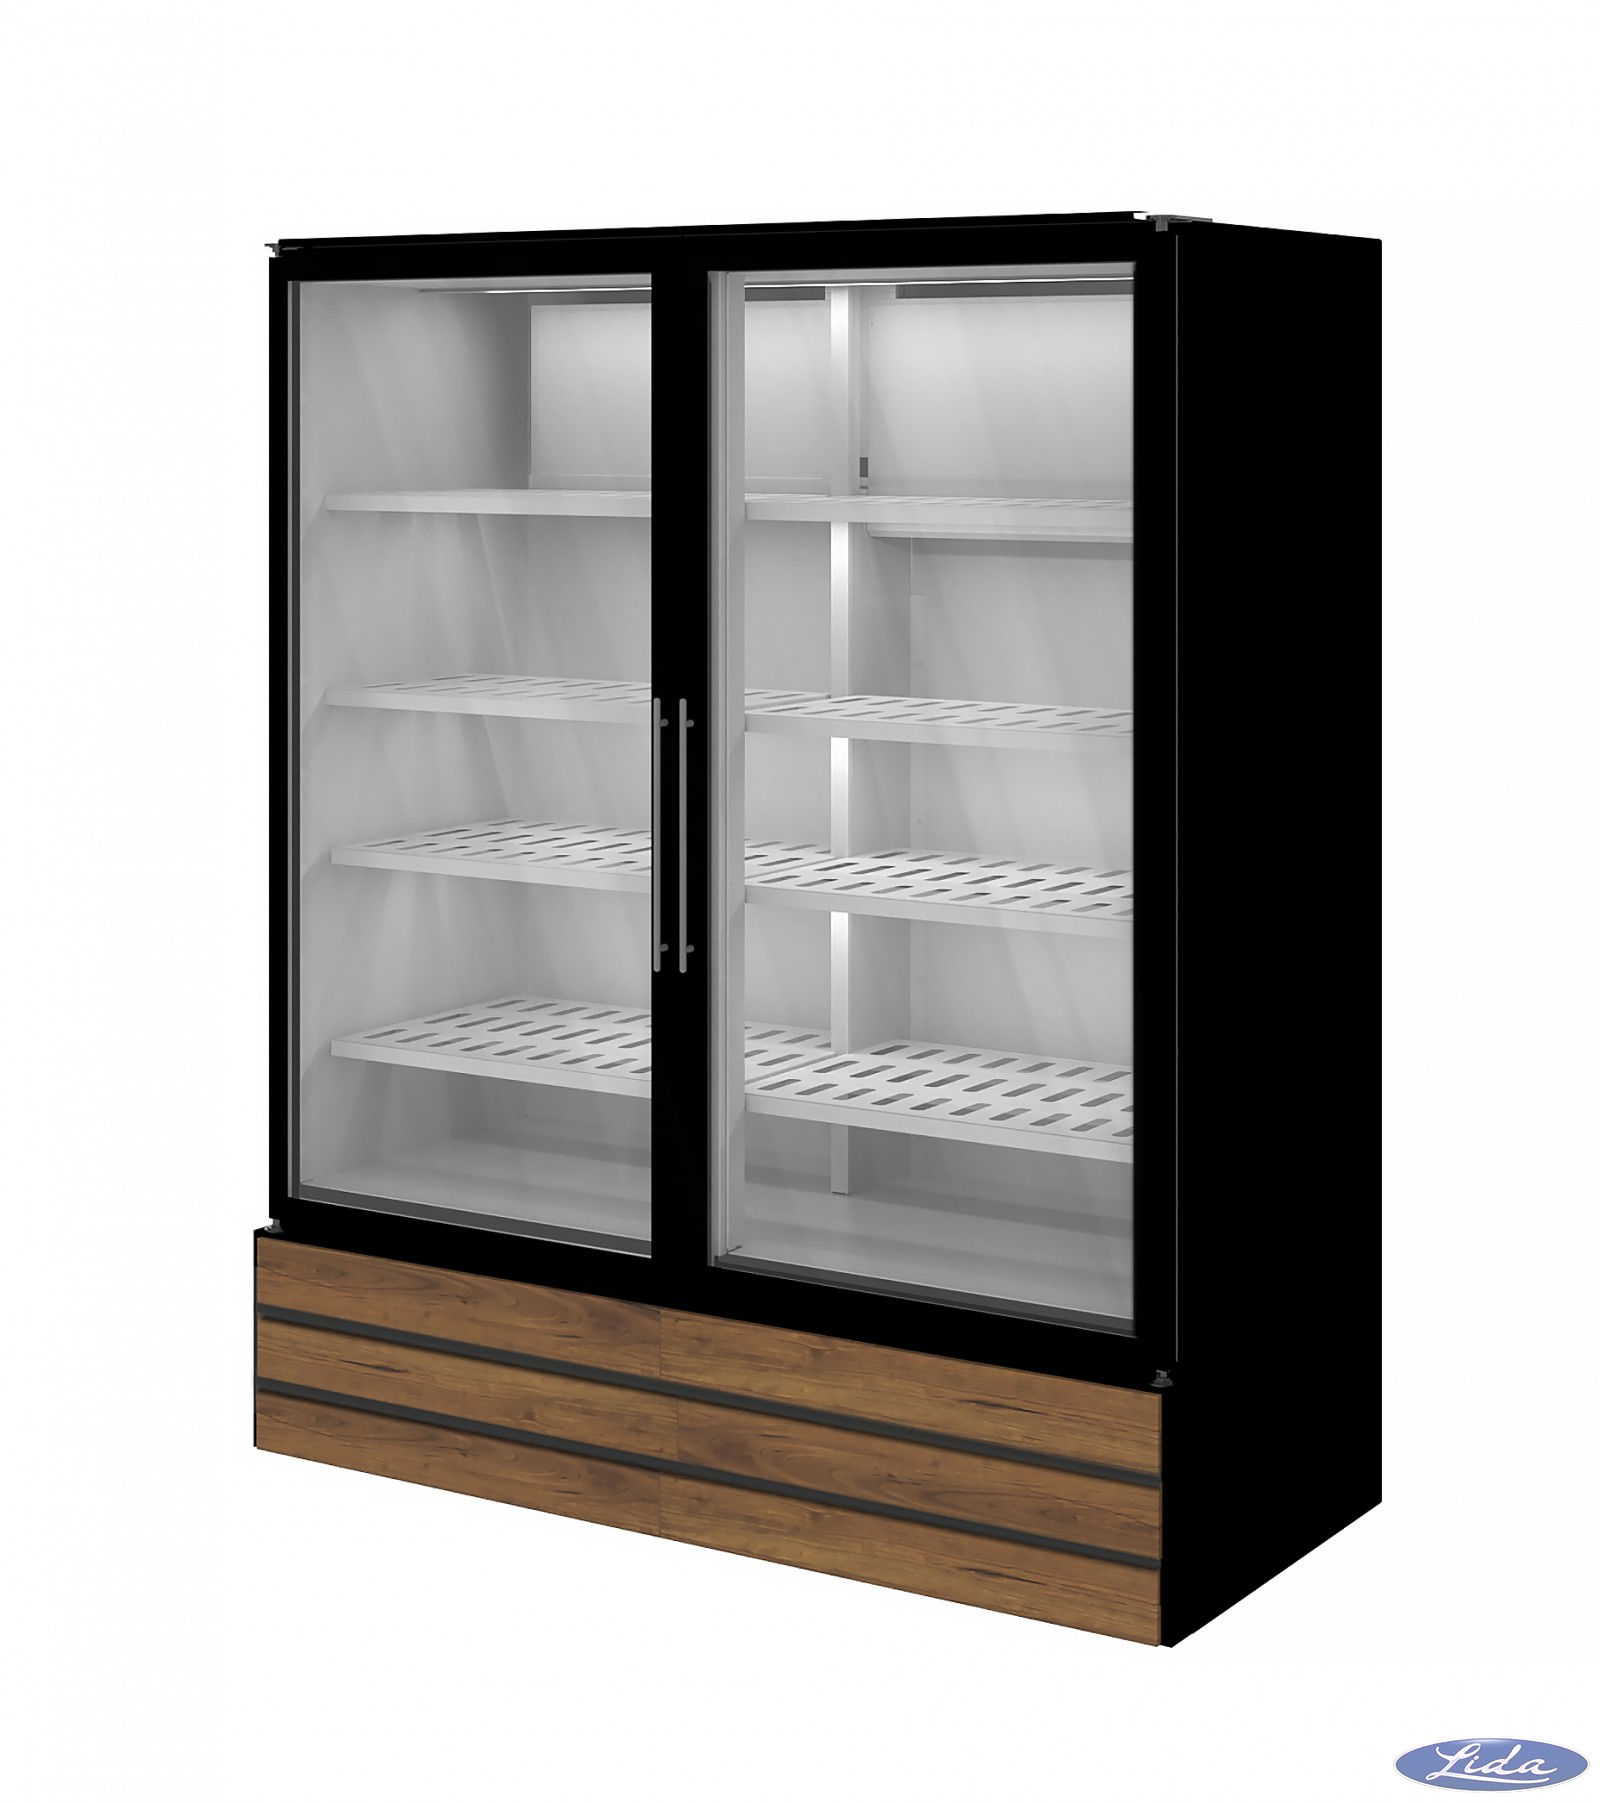 холодильный шкаф helkama инструкция